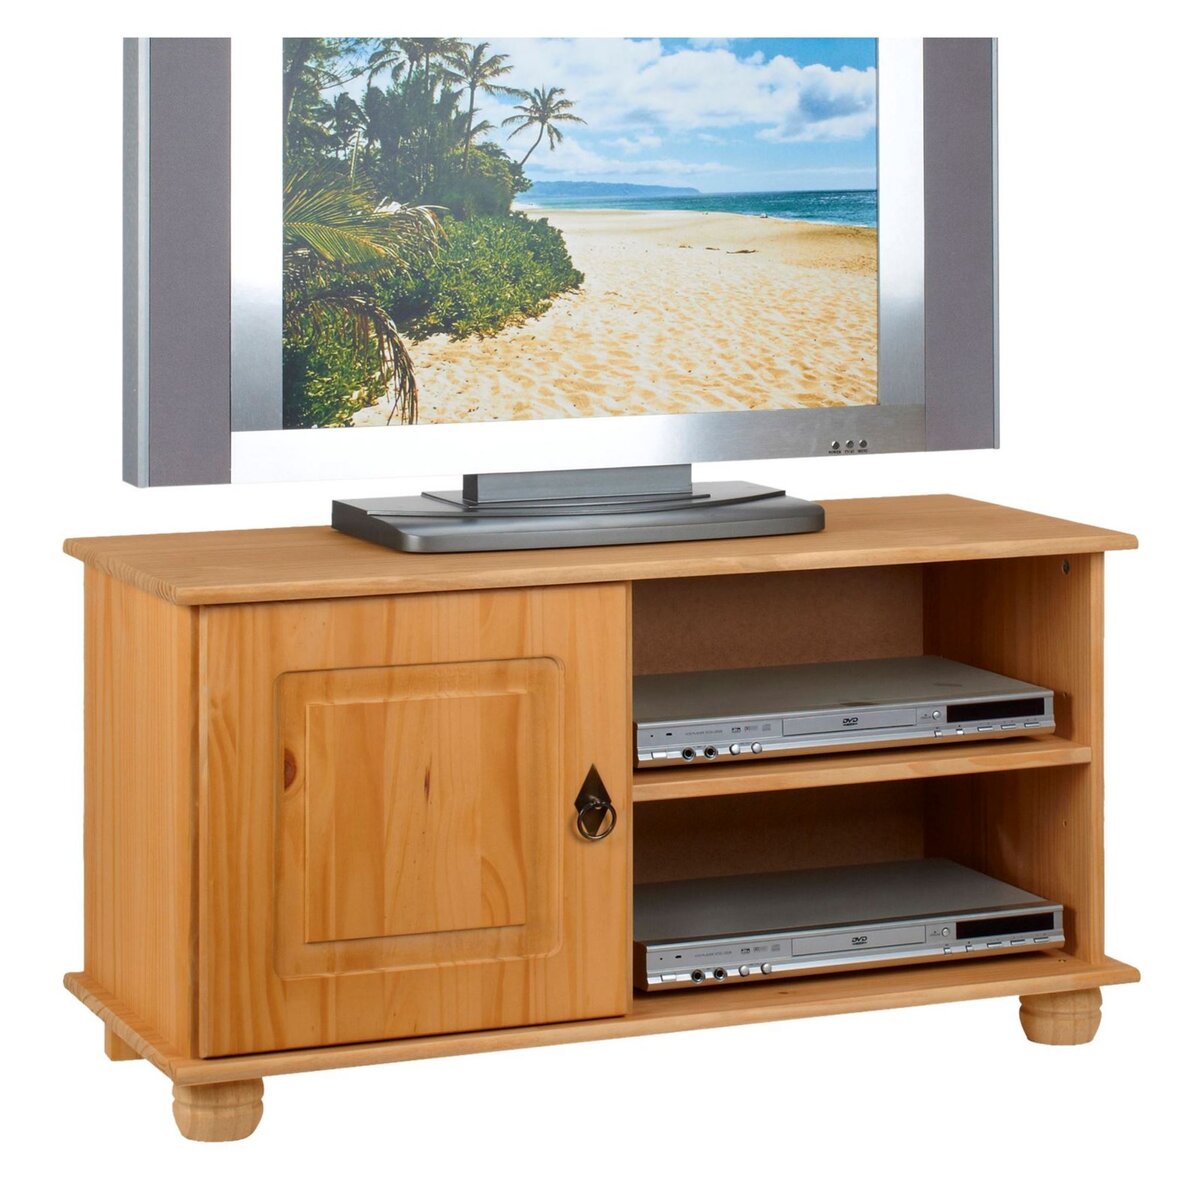 IDIMEX Meuble TV BELFORT banc télé de 94 cm en bois avec 1 porte et 2 niches, en pin massif finition cirée